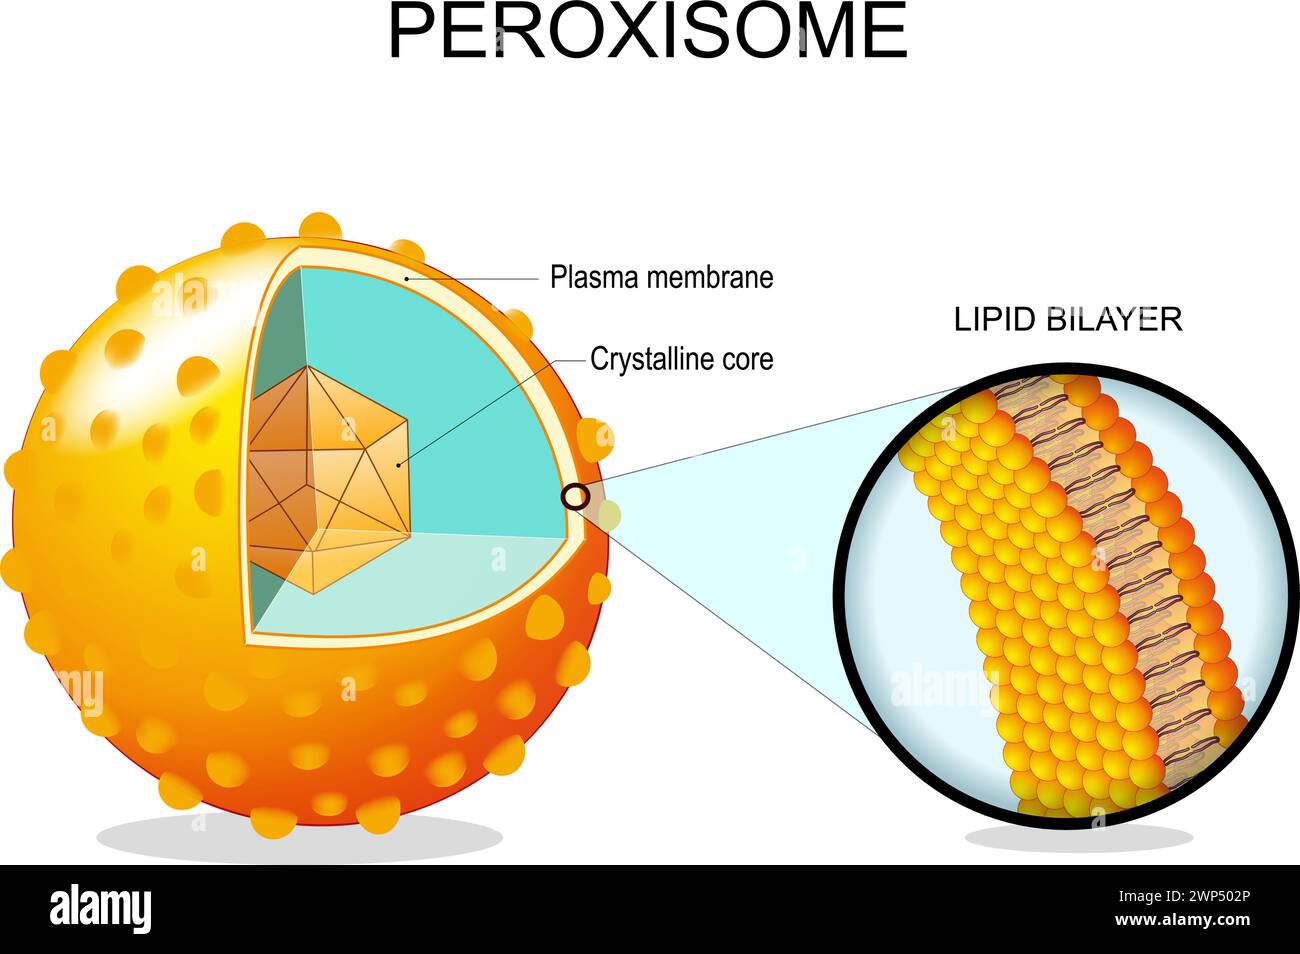 Die Peroxisomanatomie. Querschnitt einer Zellorganelle. Nahaufnahme einer Lipidbilayer-Plasmamembran, kristalliner Kern, Transportproteine. Vektorillus Stock Vektor